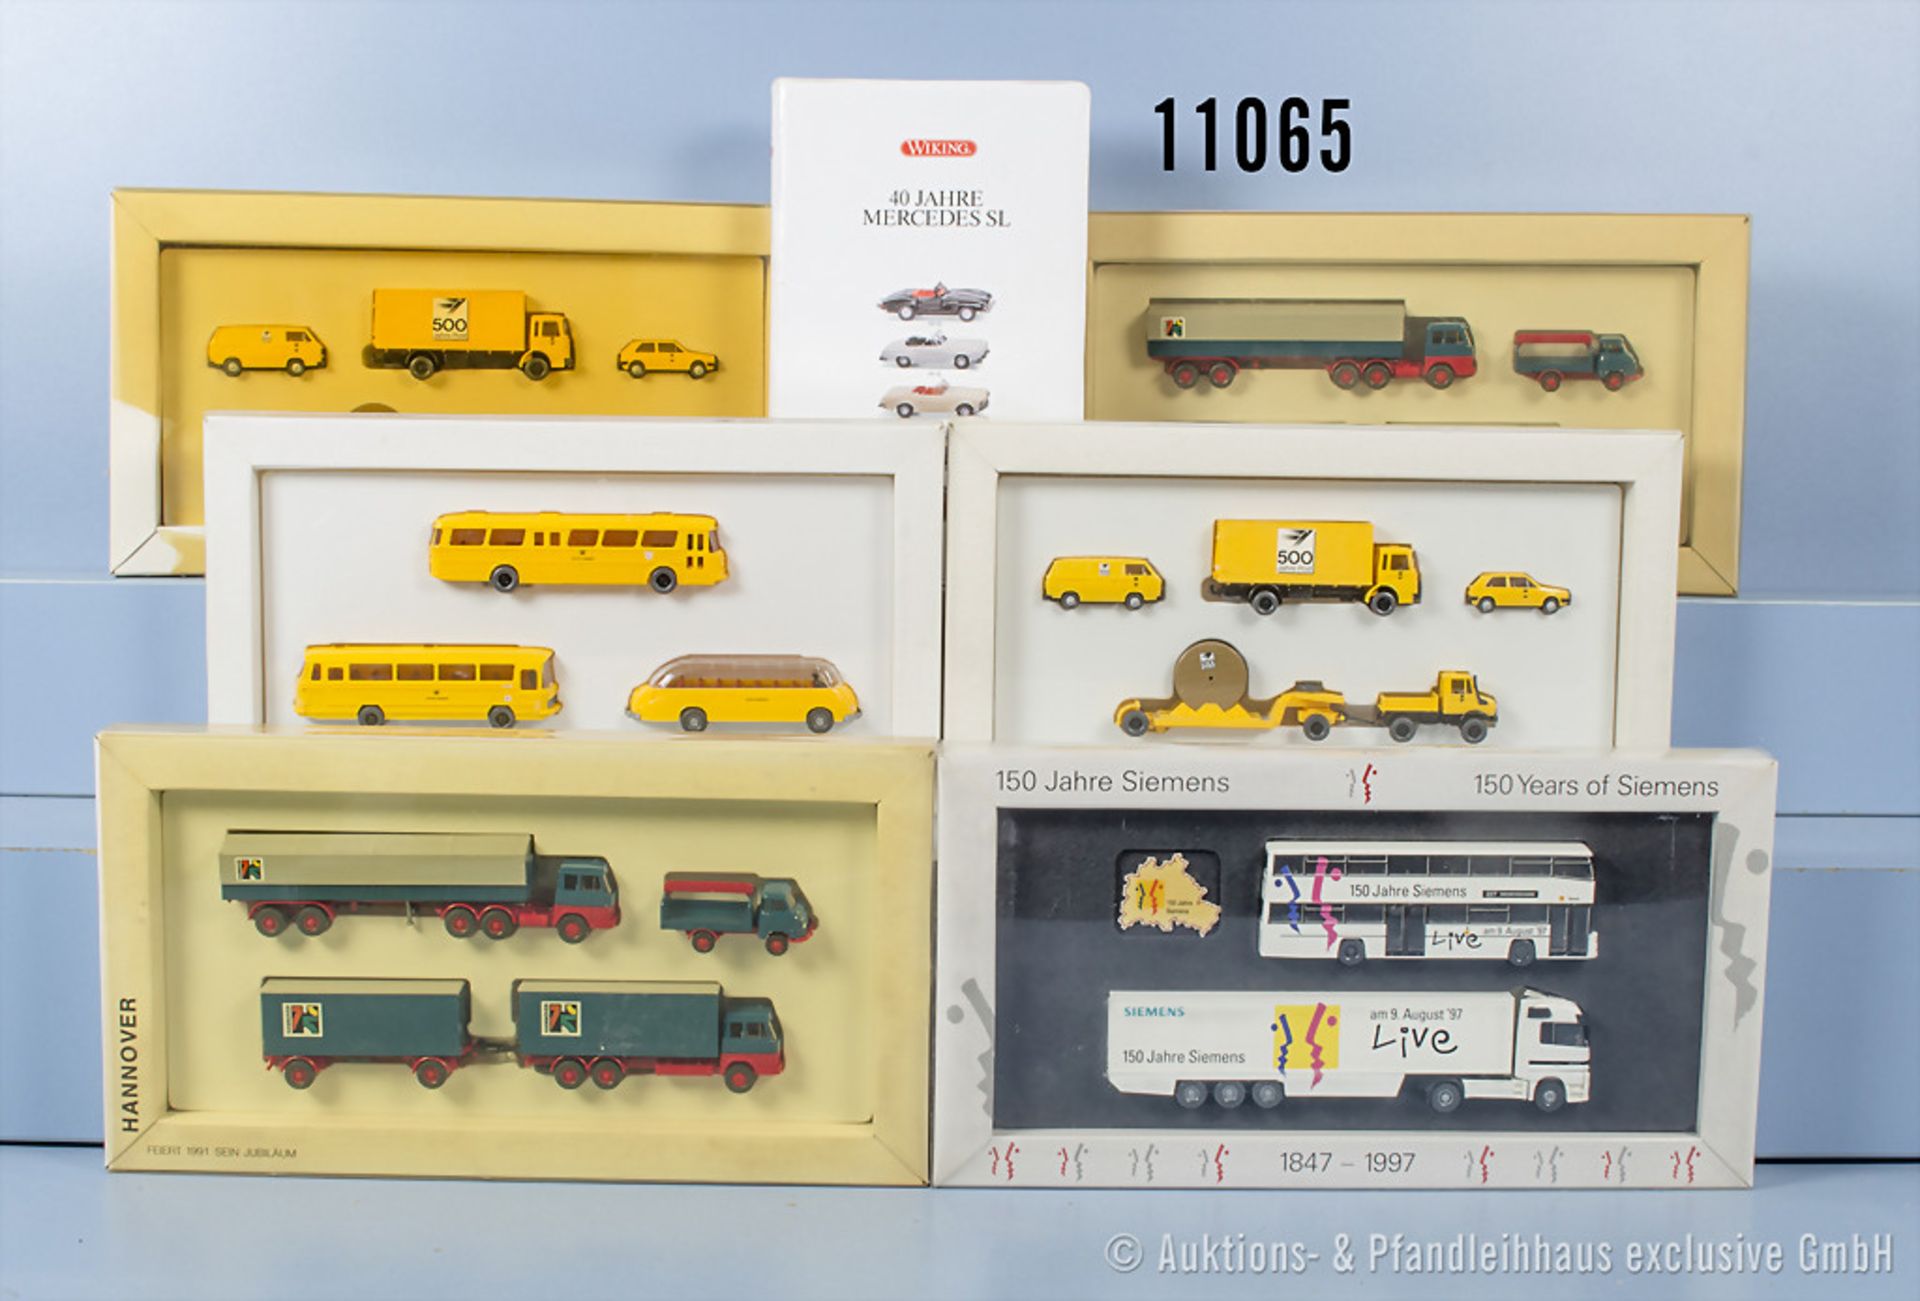 7 Wiking H0 Setpackungen, dabei 40 Jahre Mercedes SL, 150 Jahre Siemens, Hannover feiert ...